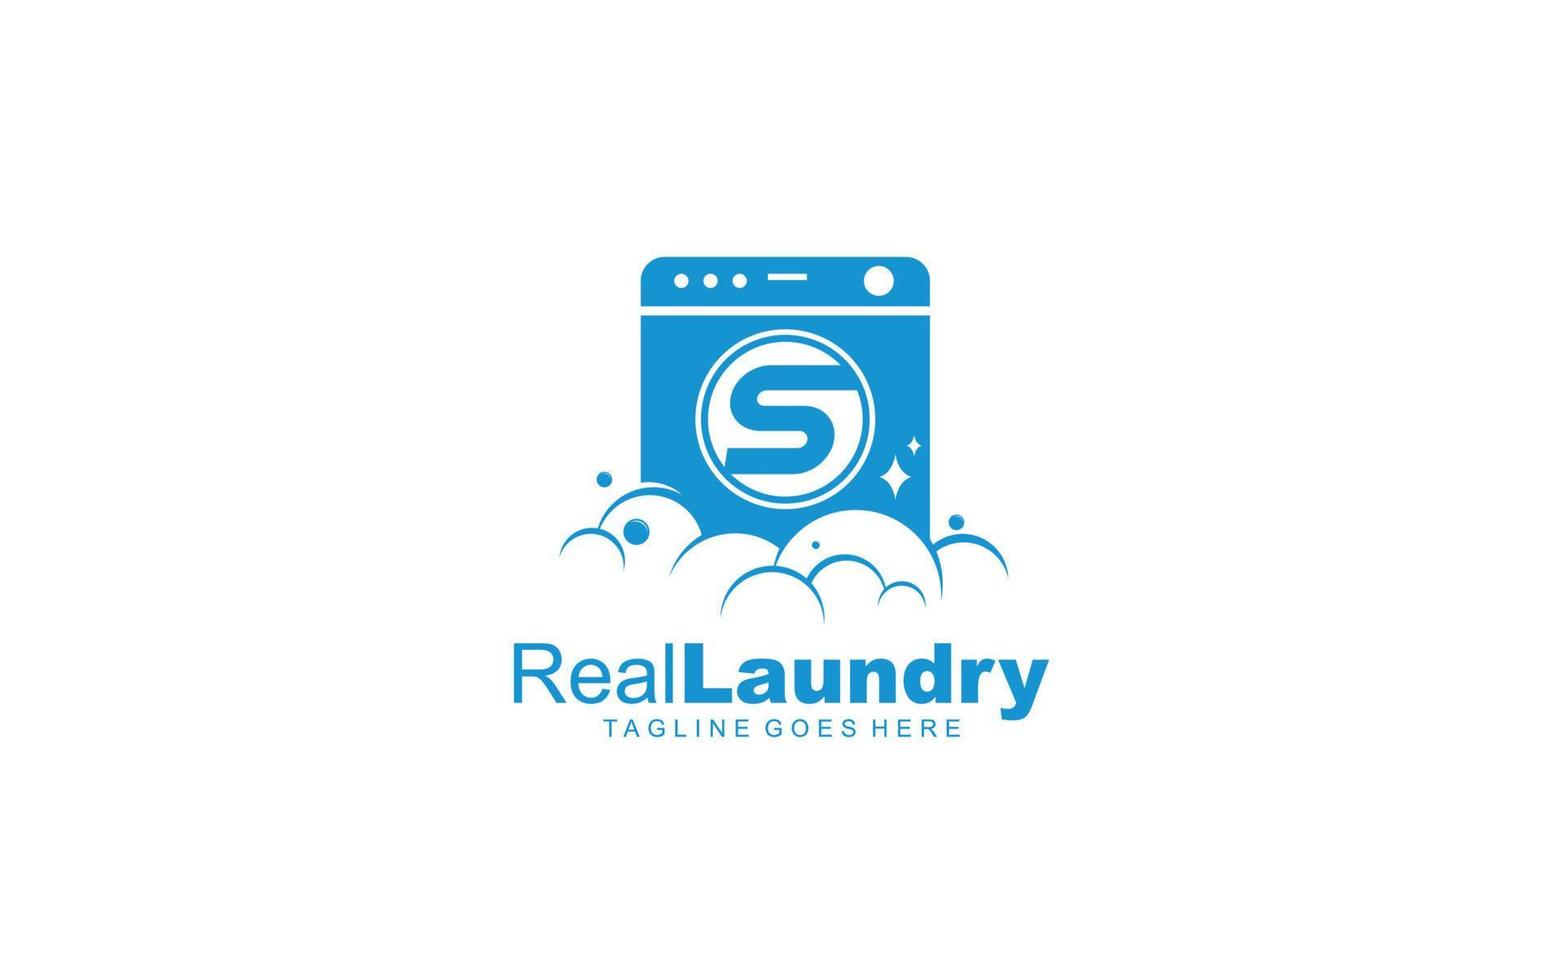 s logotipo de lavandería para empresa de marca. ilustración de vector de plantilla de carta para su marca.